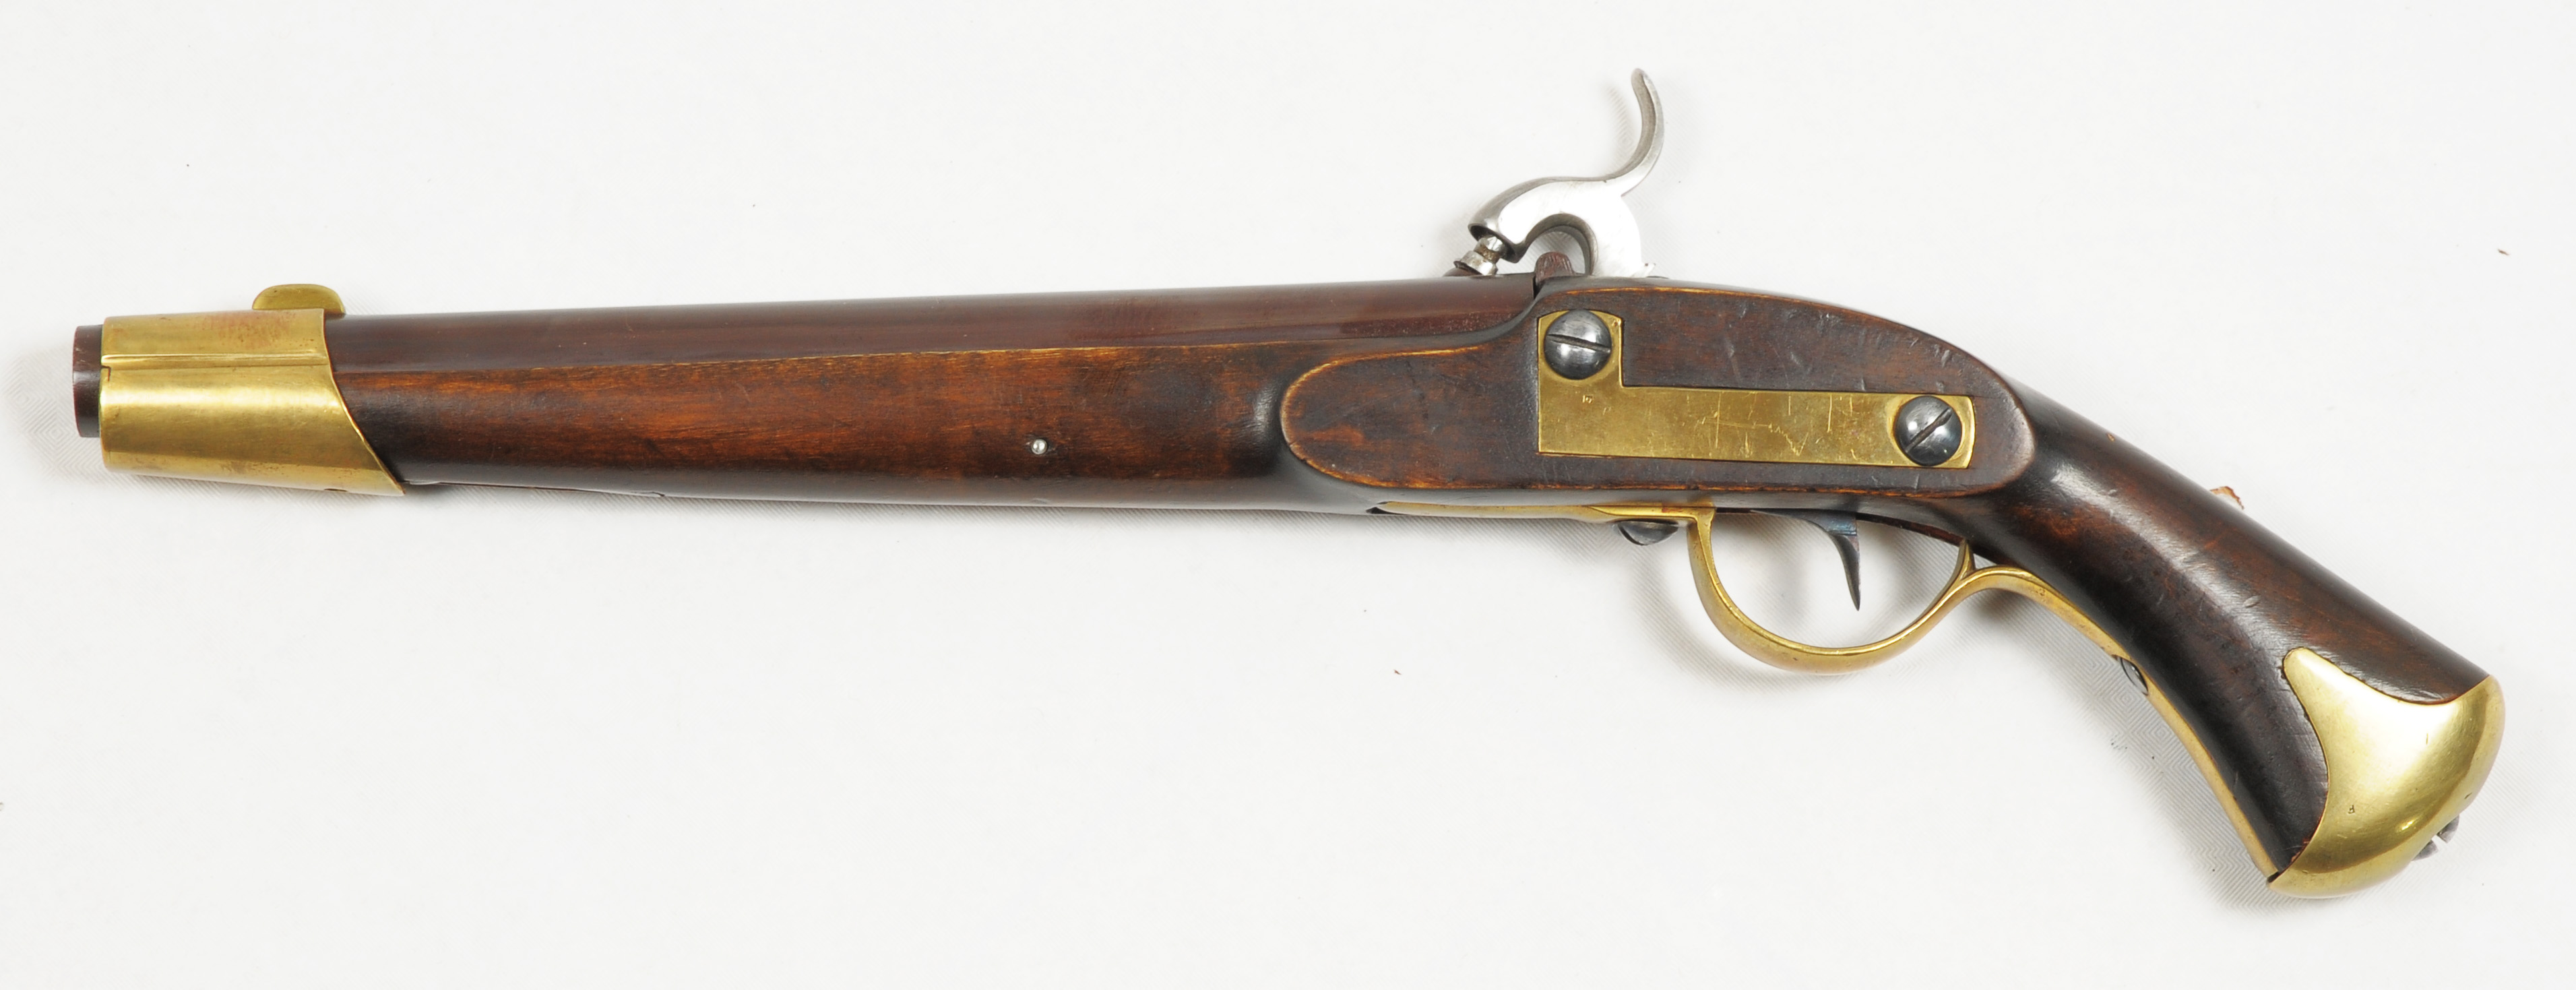 ./guns/pistol/bilder/Pistol-Kongsberg-1835-Malmberg-3-2.jpg